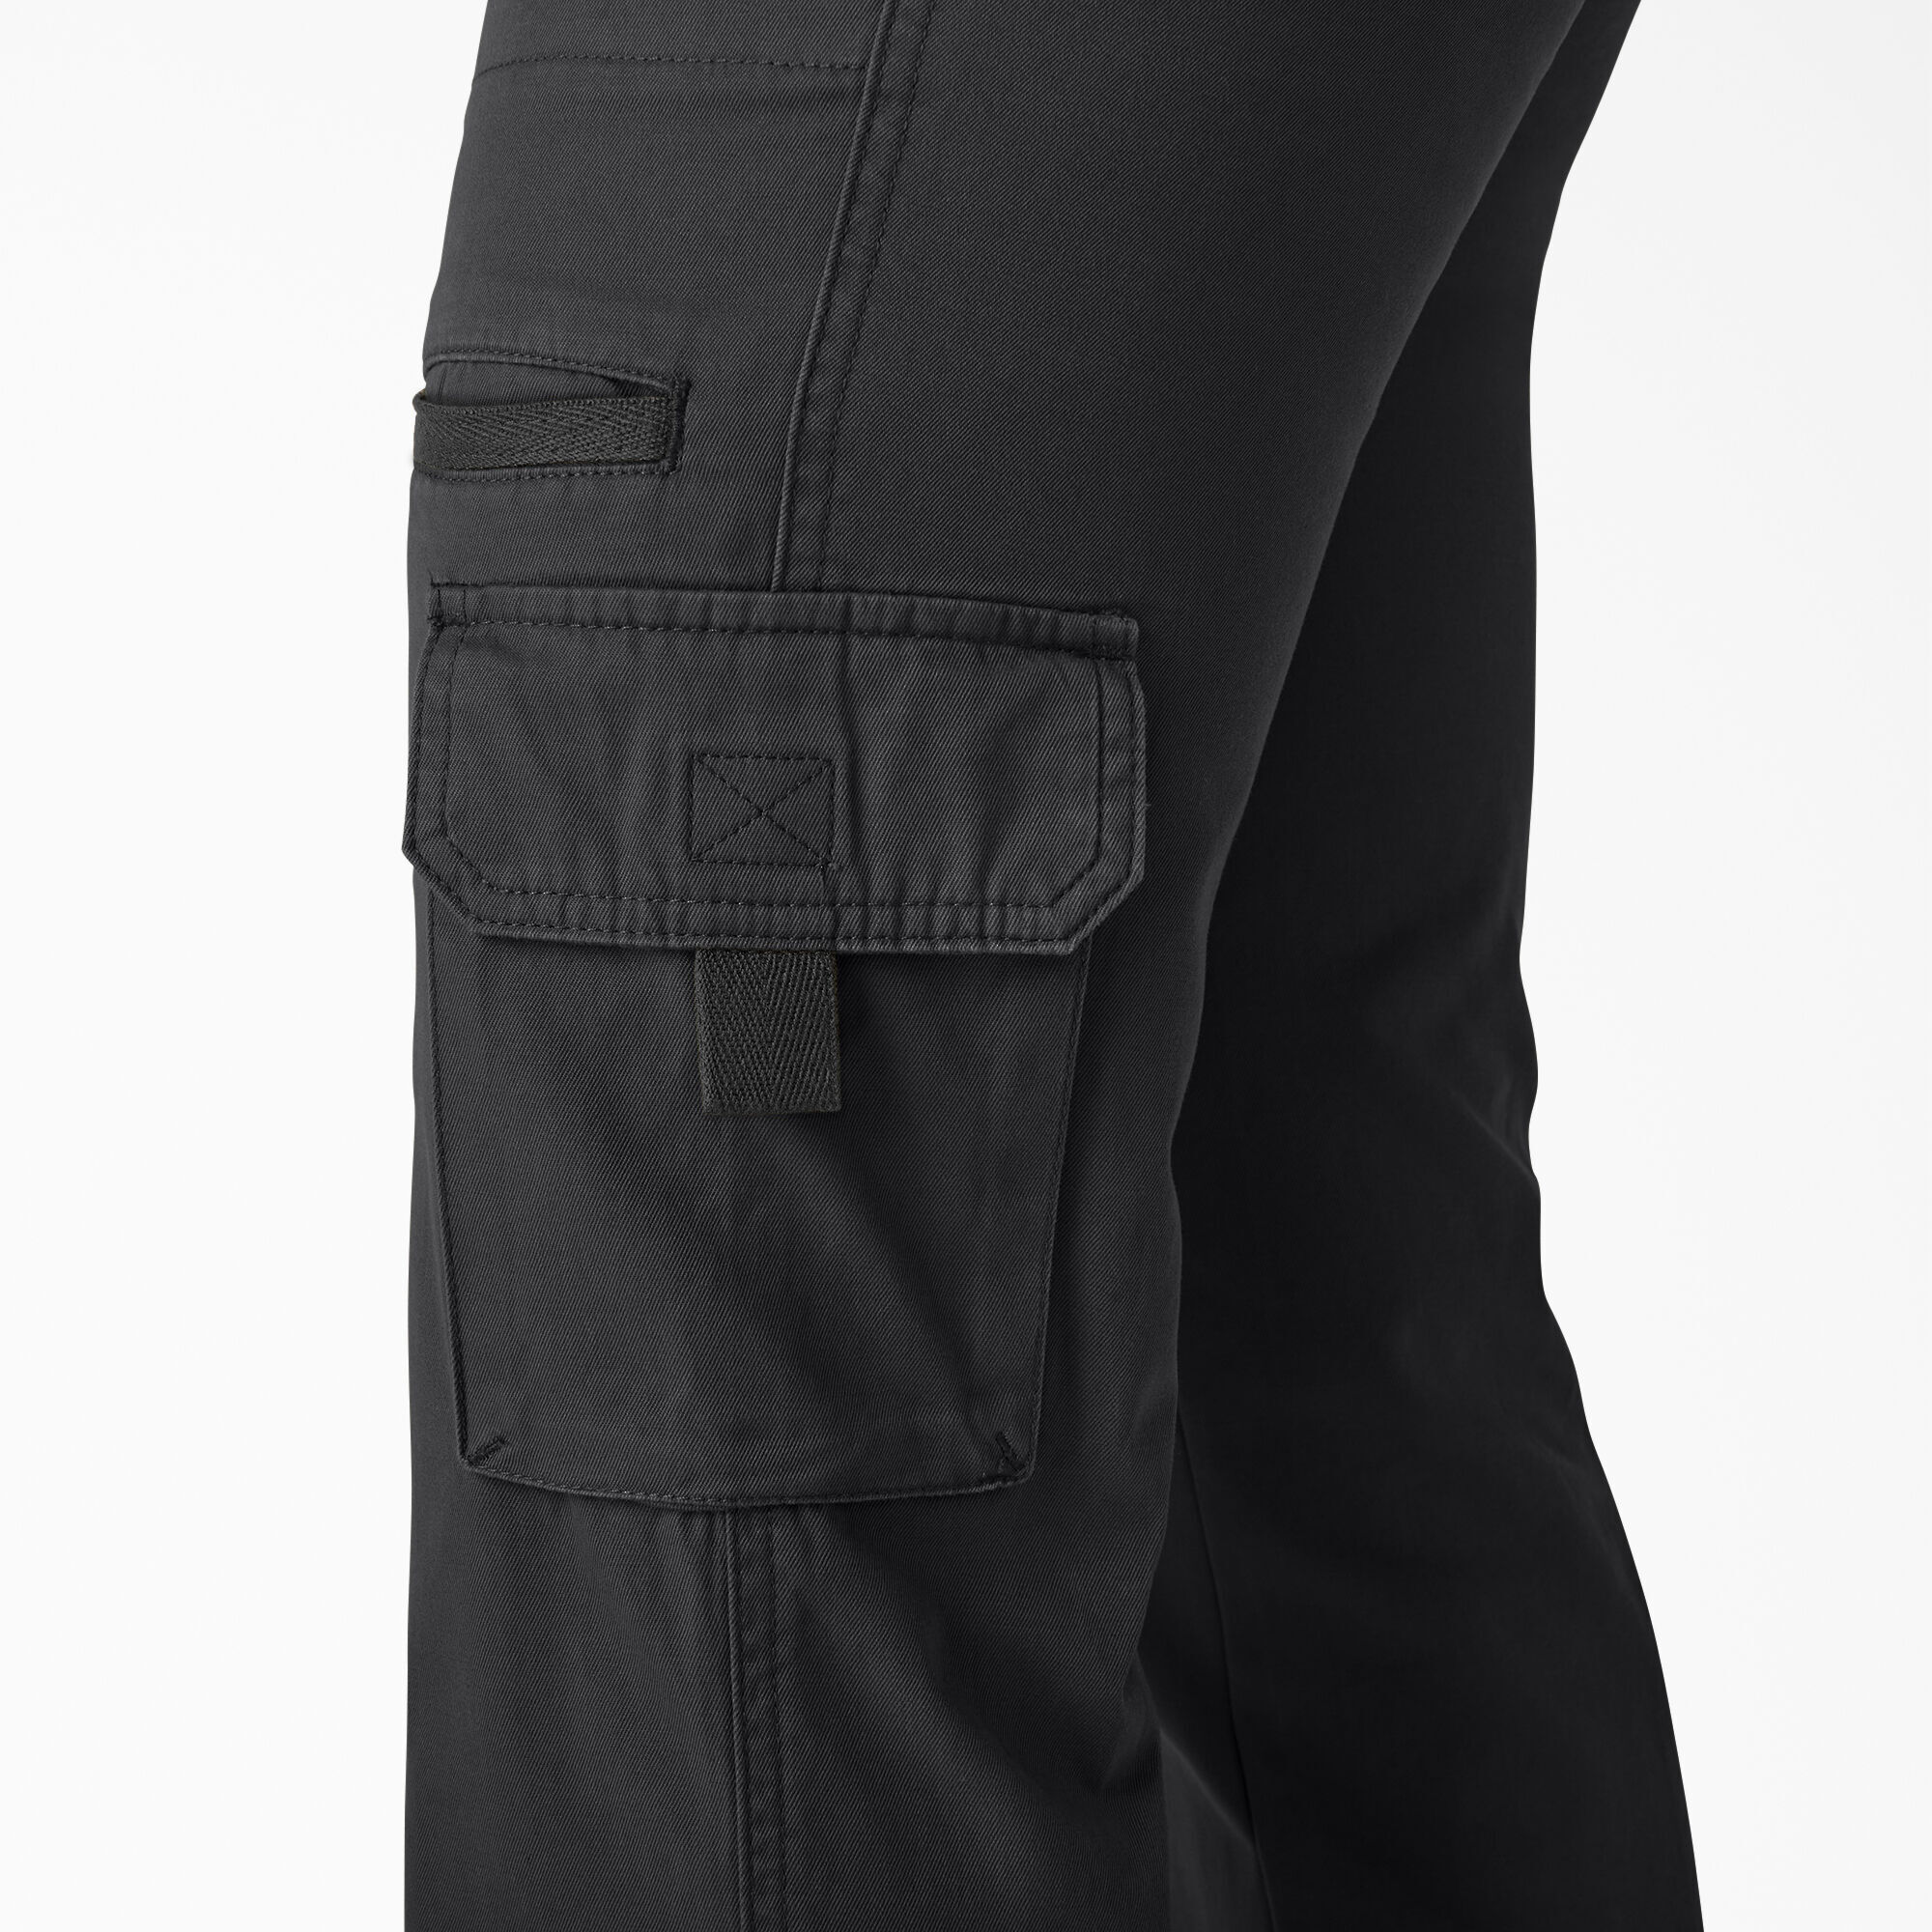 Black Dickies Redhawk Ladies Womens Cargo Pocket Workwear Pants Trousers Navy 